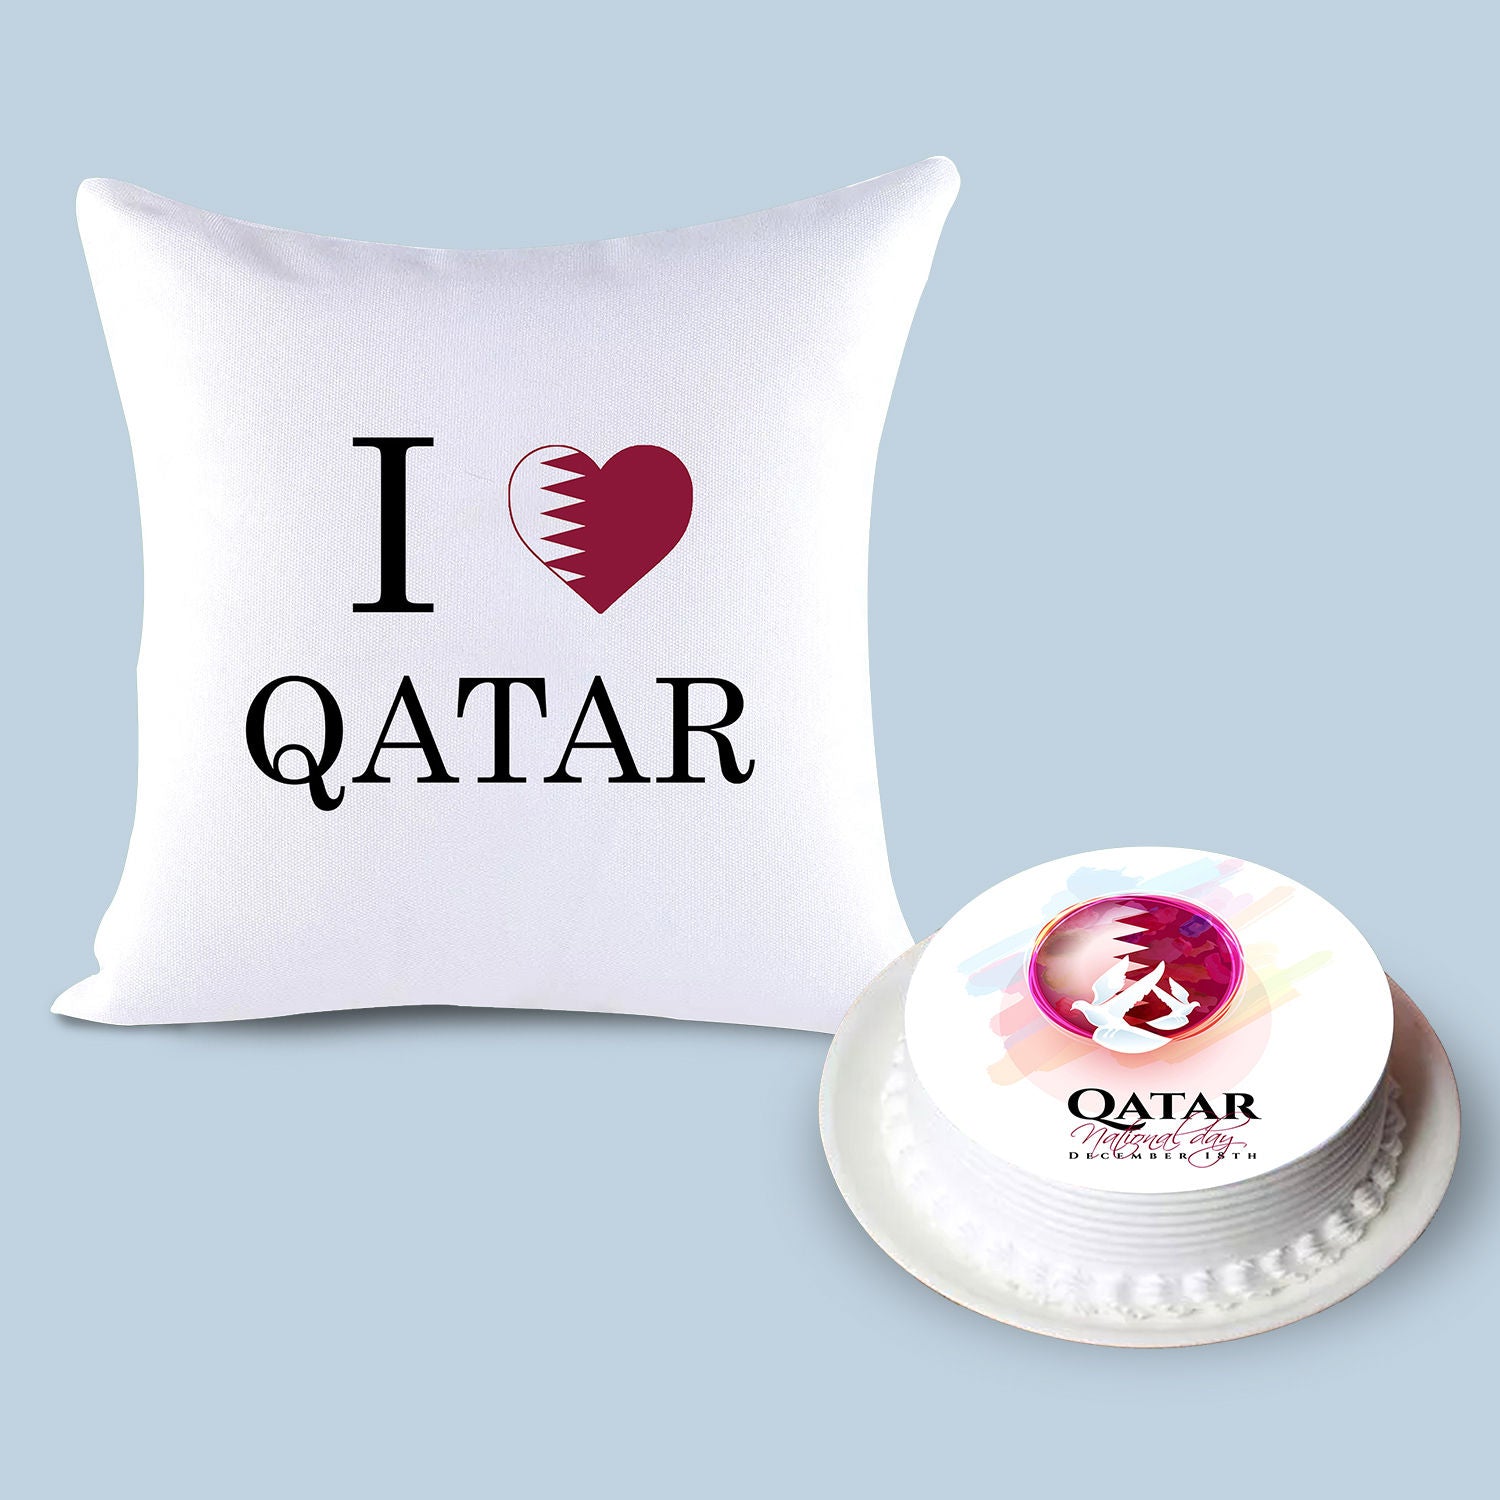 كومبو كيك شوكولاته ووسادة مطبوعة بأحب قطر